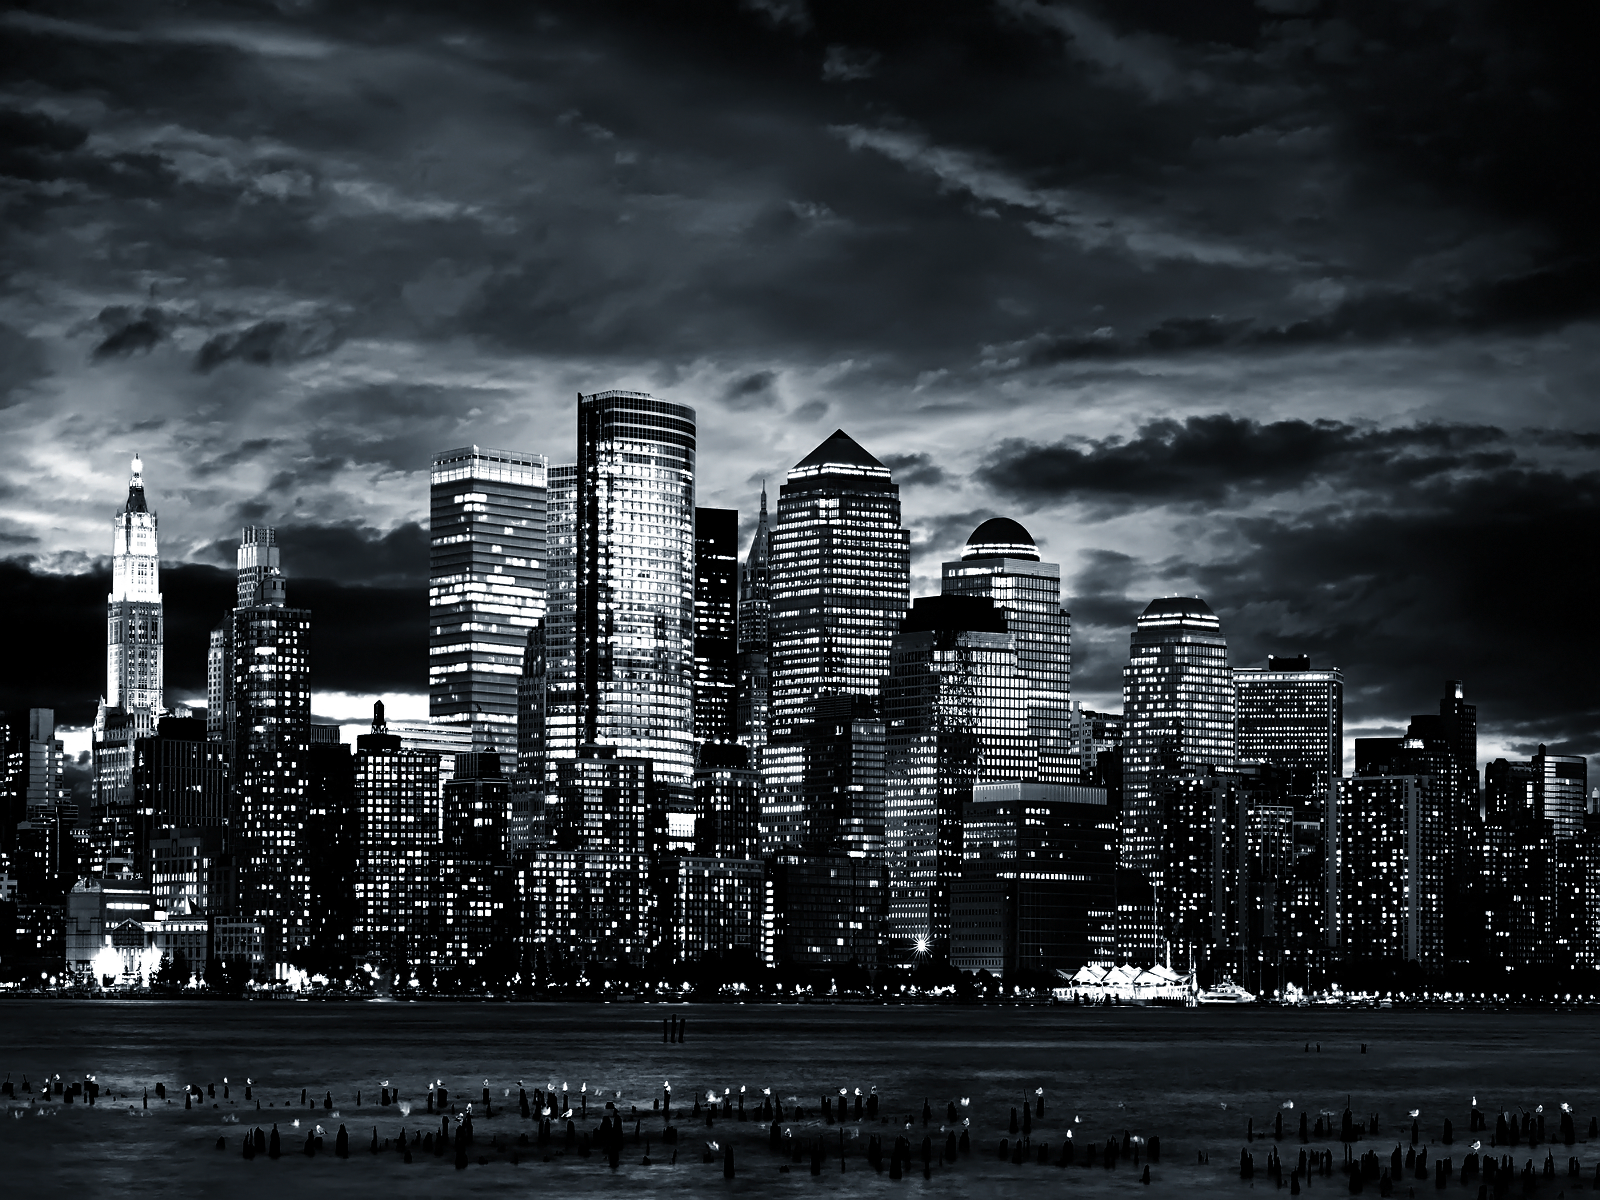 paisaje urbano fondos de pantalla en blanco y negro,paisaje urbano,ciudad,área metropolitana,horizonte,cielo